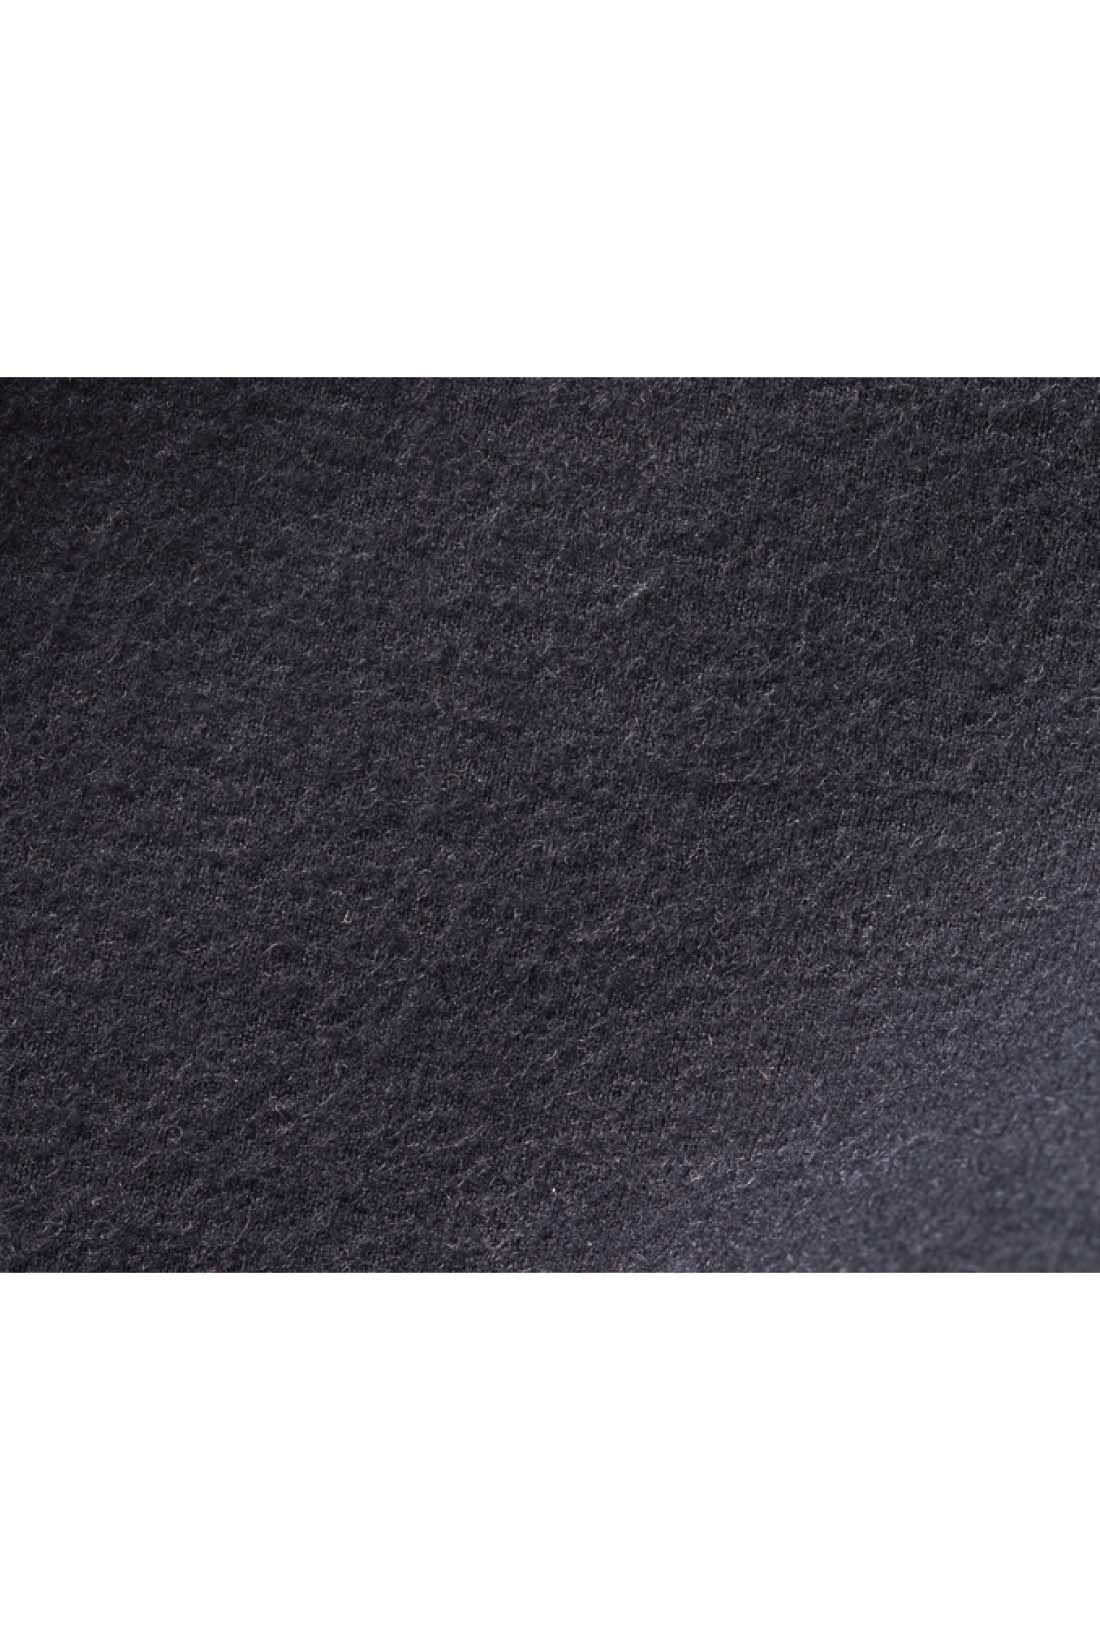 DRECO by IEDIT|IEDIT[イディット]　本革素材にこだわった国産レースアップブーツ〈ブラック〉|内側はあたたかみのあるフェルトタッチで、やわらかな履き心地。